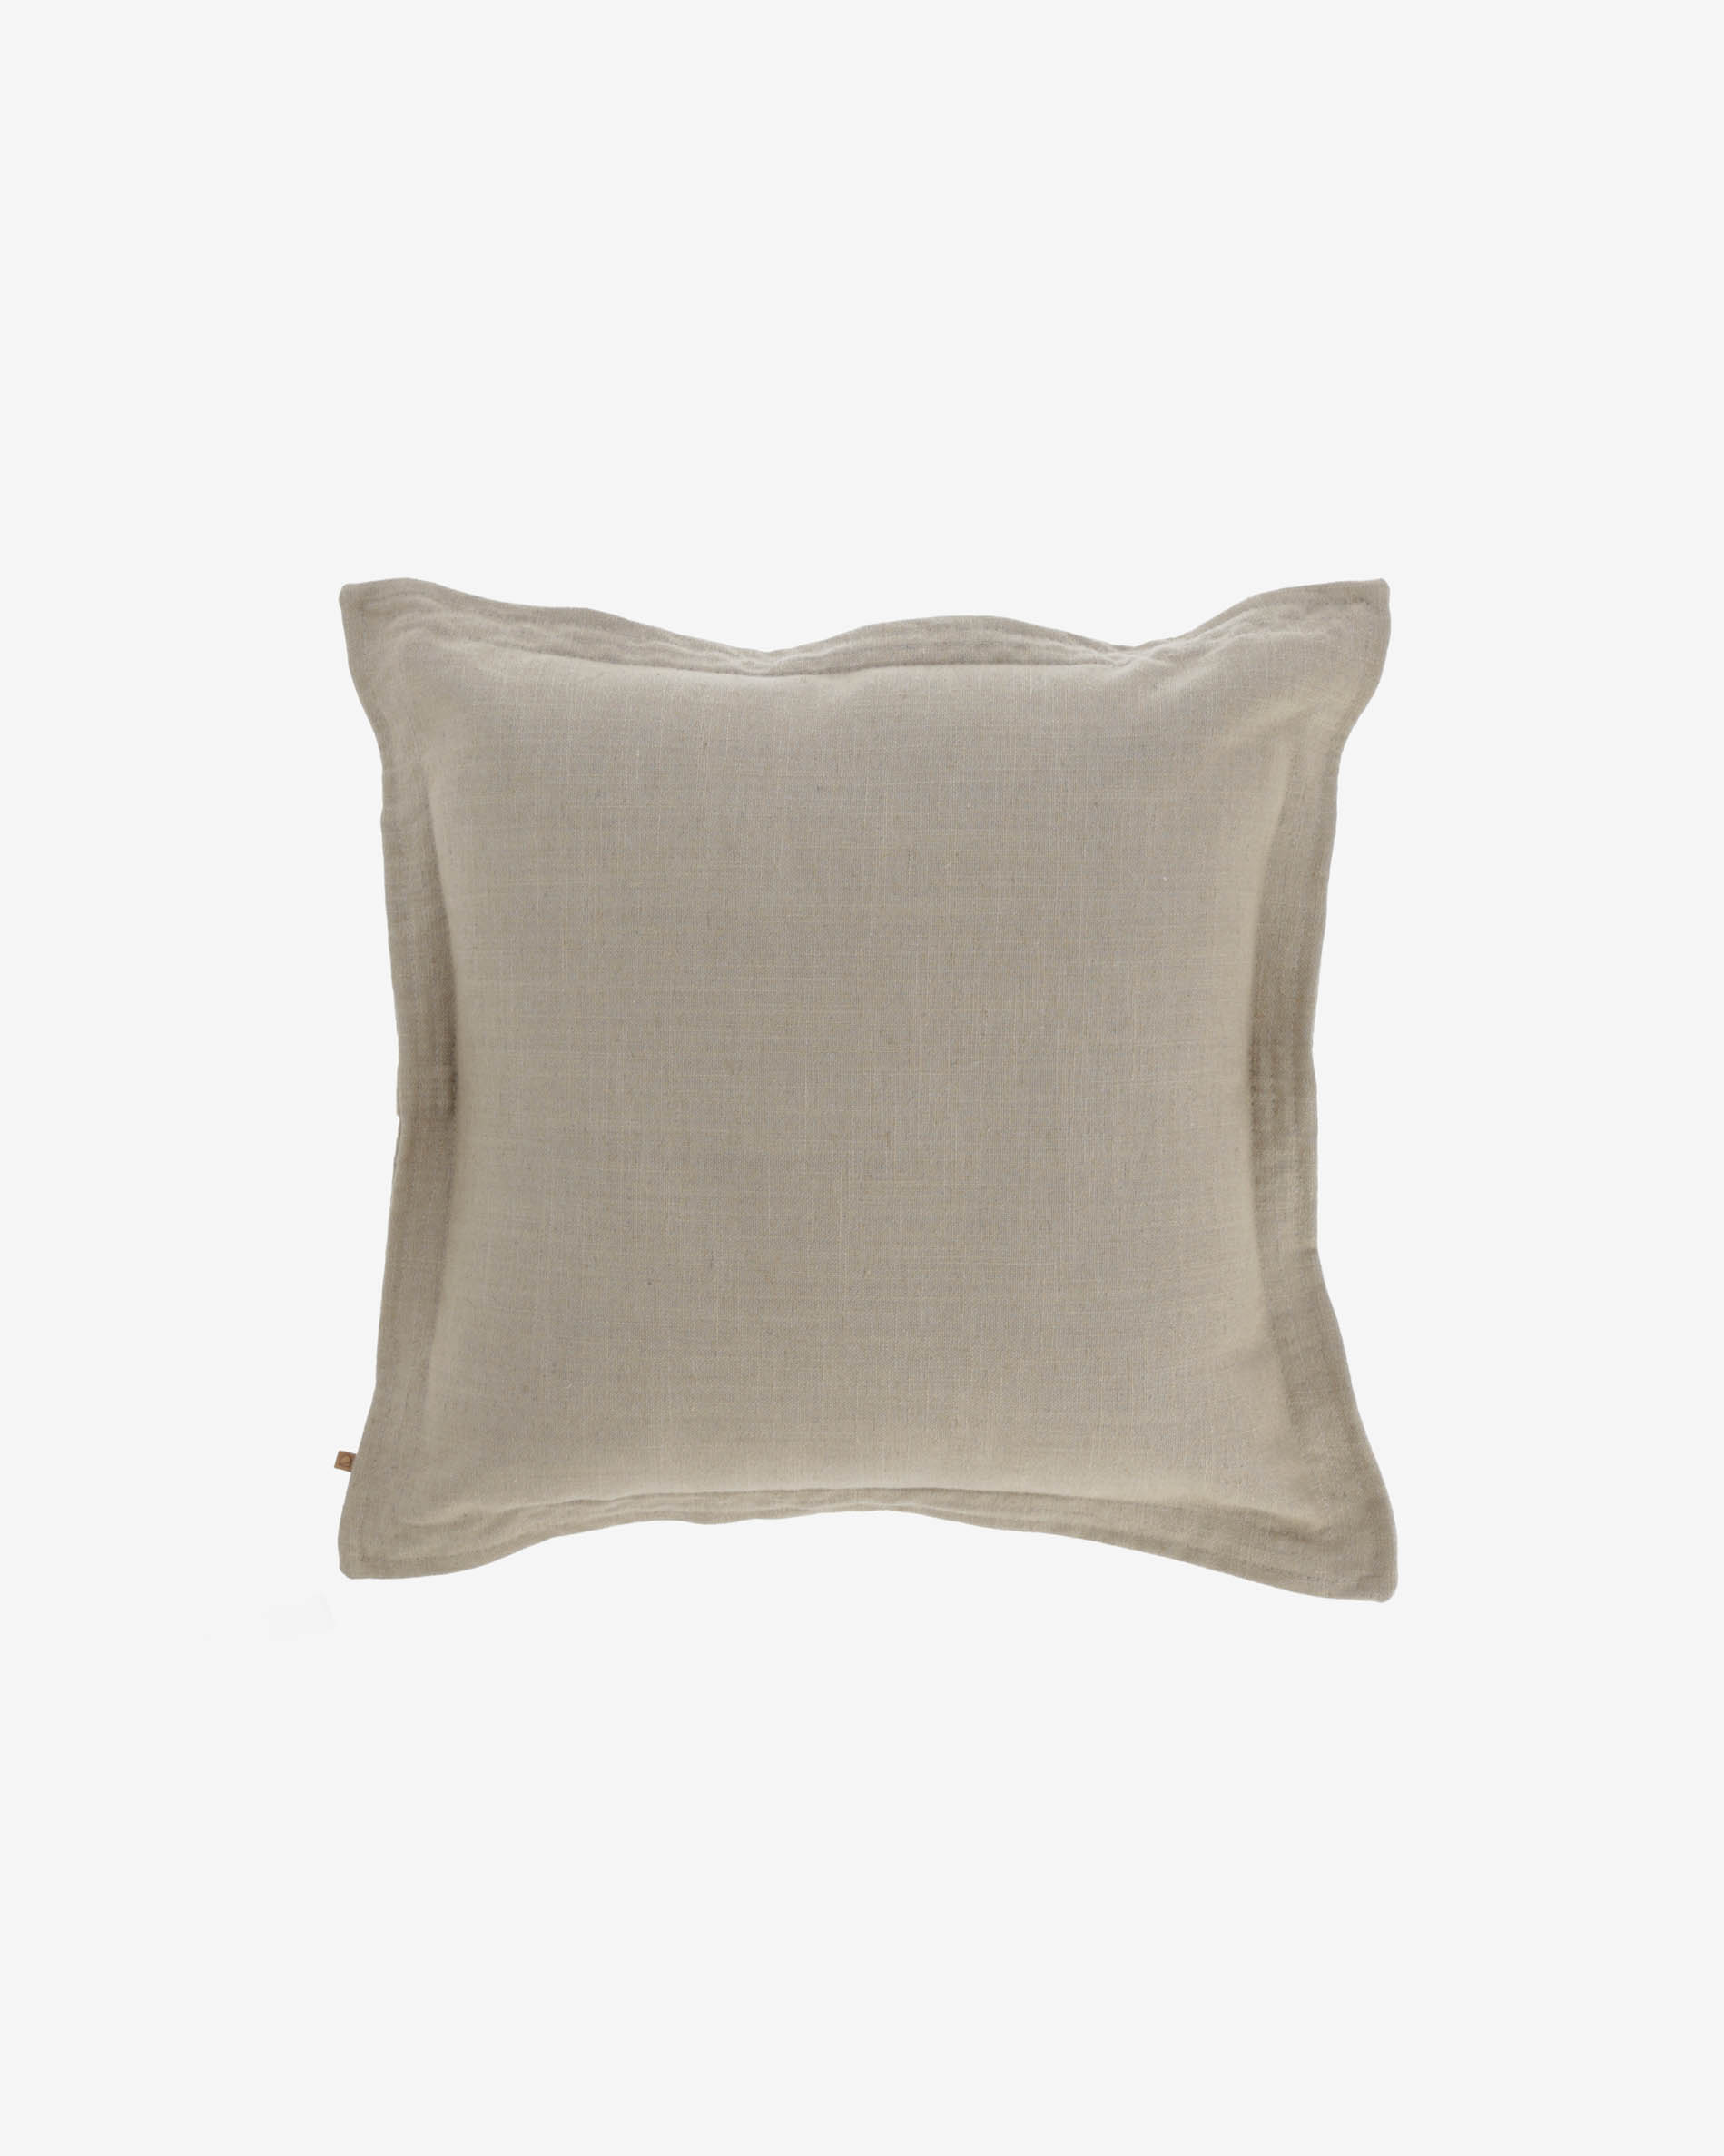 Maelina cushion cover in beige, 45 x 45 cm